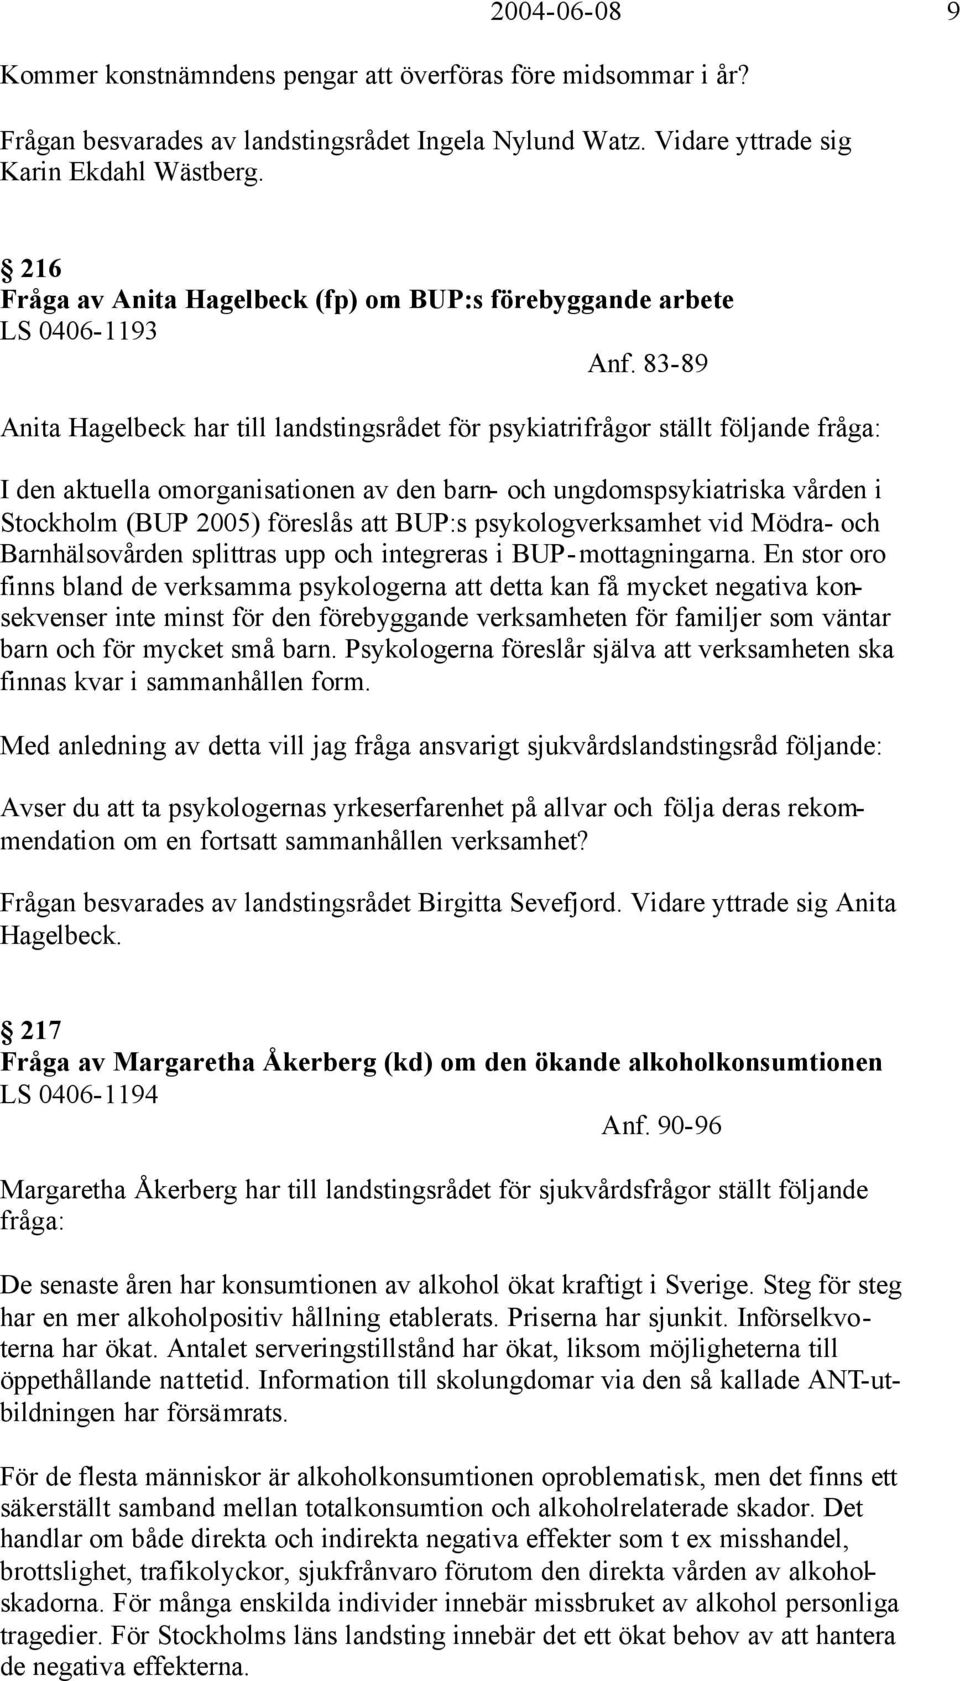 83-89 Anita Hagelbeck har till landstingsrådet för psykiatrifrågor ställt följande fråga: I den aktuella omorganisationen av den barn- och ungdomspsykiatriska vården i Stockholm (BUP 2005) föreslås